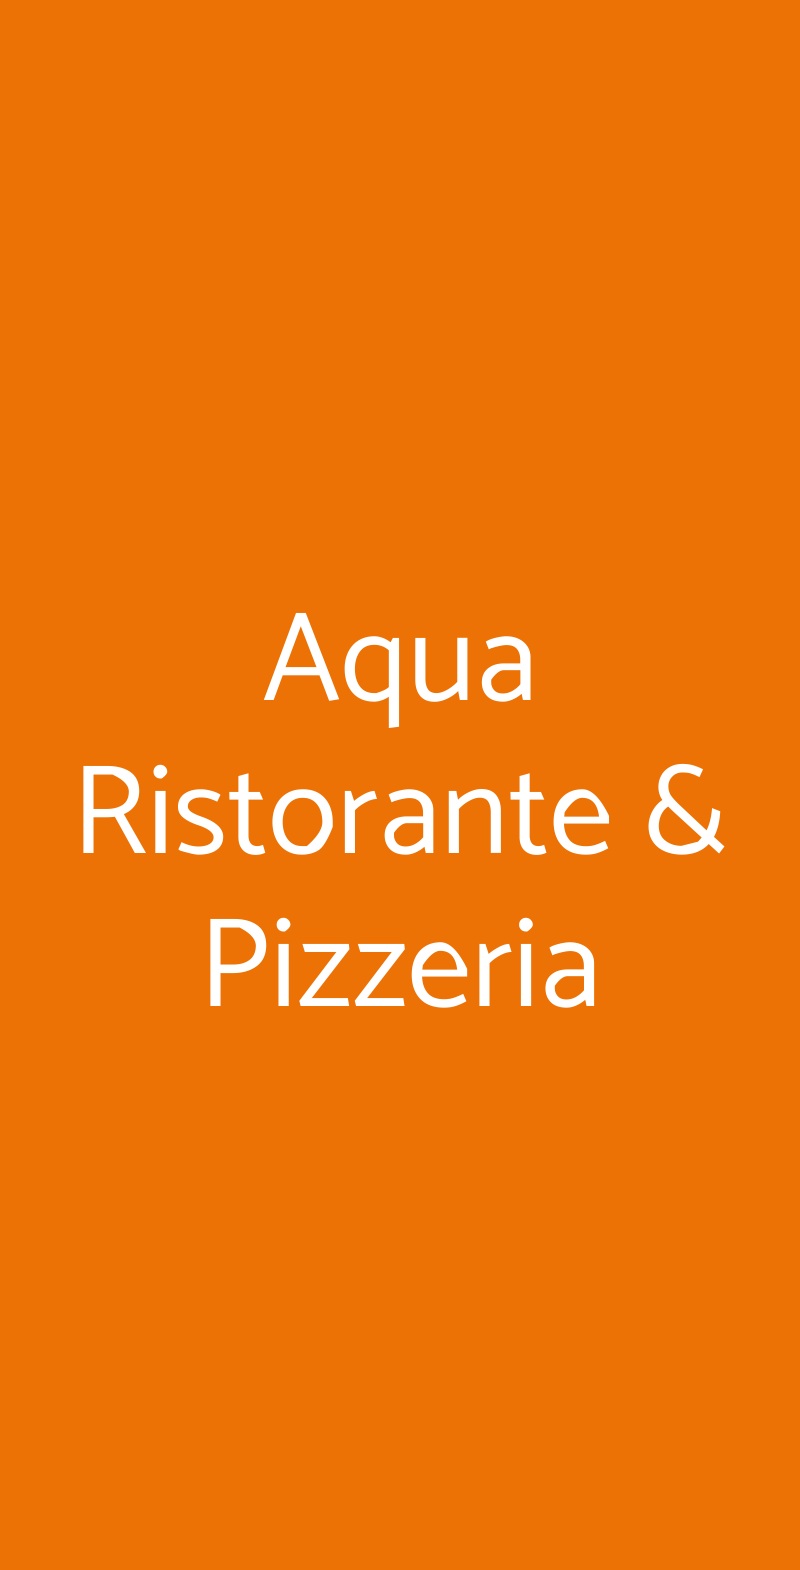 Aqua Ristorante & Pizzeria Quartu Sant'Elena menù 1 pagina